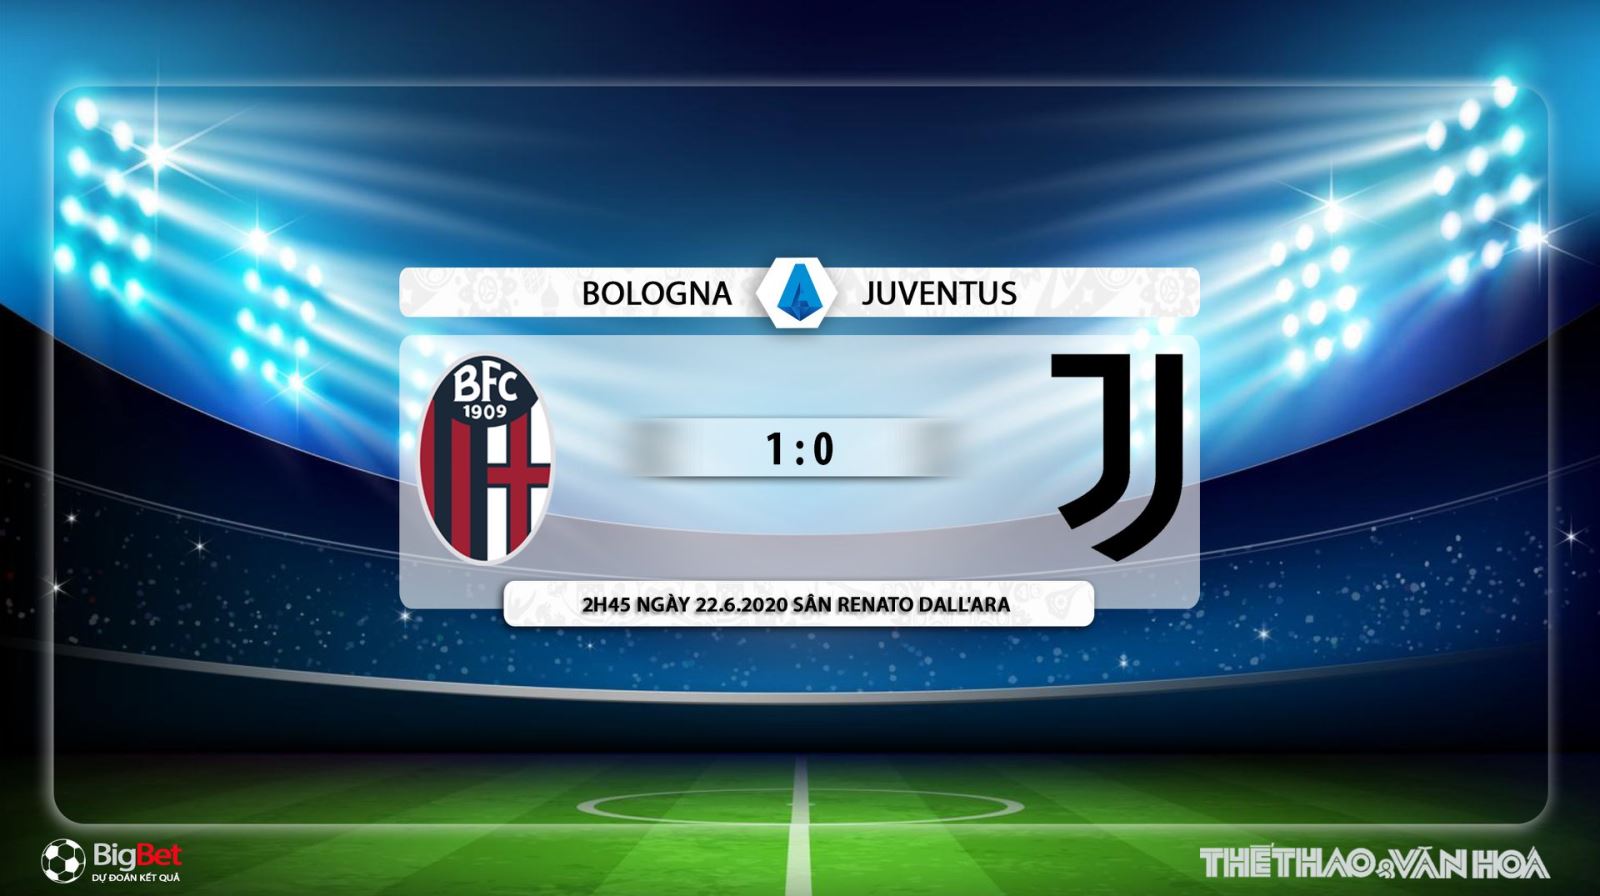 Bologna vs Juventus, Juvetus, Bologna, Bologna vs Juve, nhận định bóng đá, kèo bóng đá, trực tiếp, Juve, serie a, trực tiếp bóng đá, FPT Play